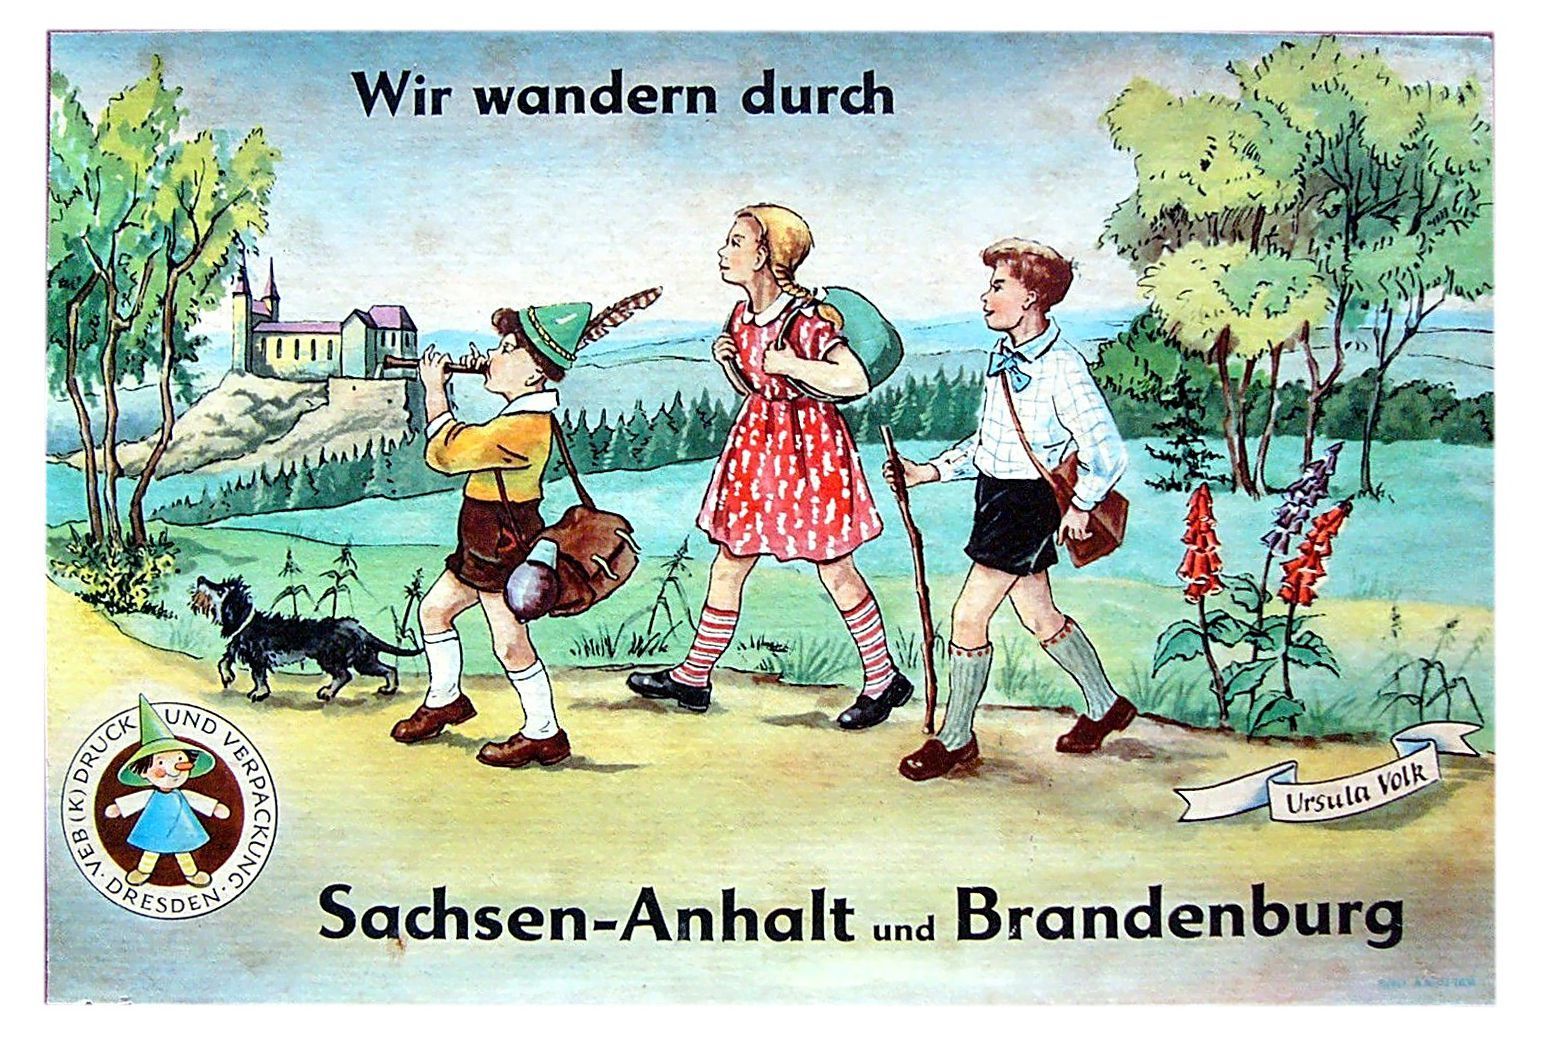 Wir wandern durch Sachsen-Anhalt und Brandenburg